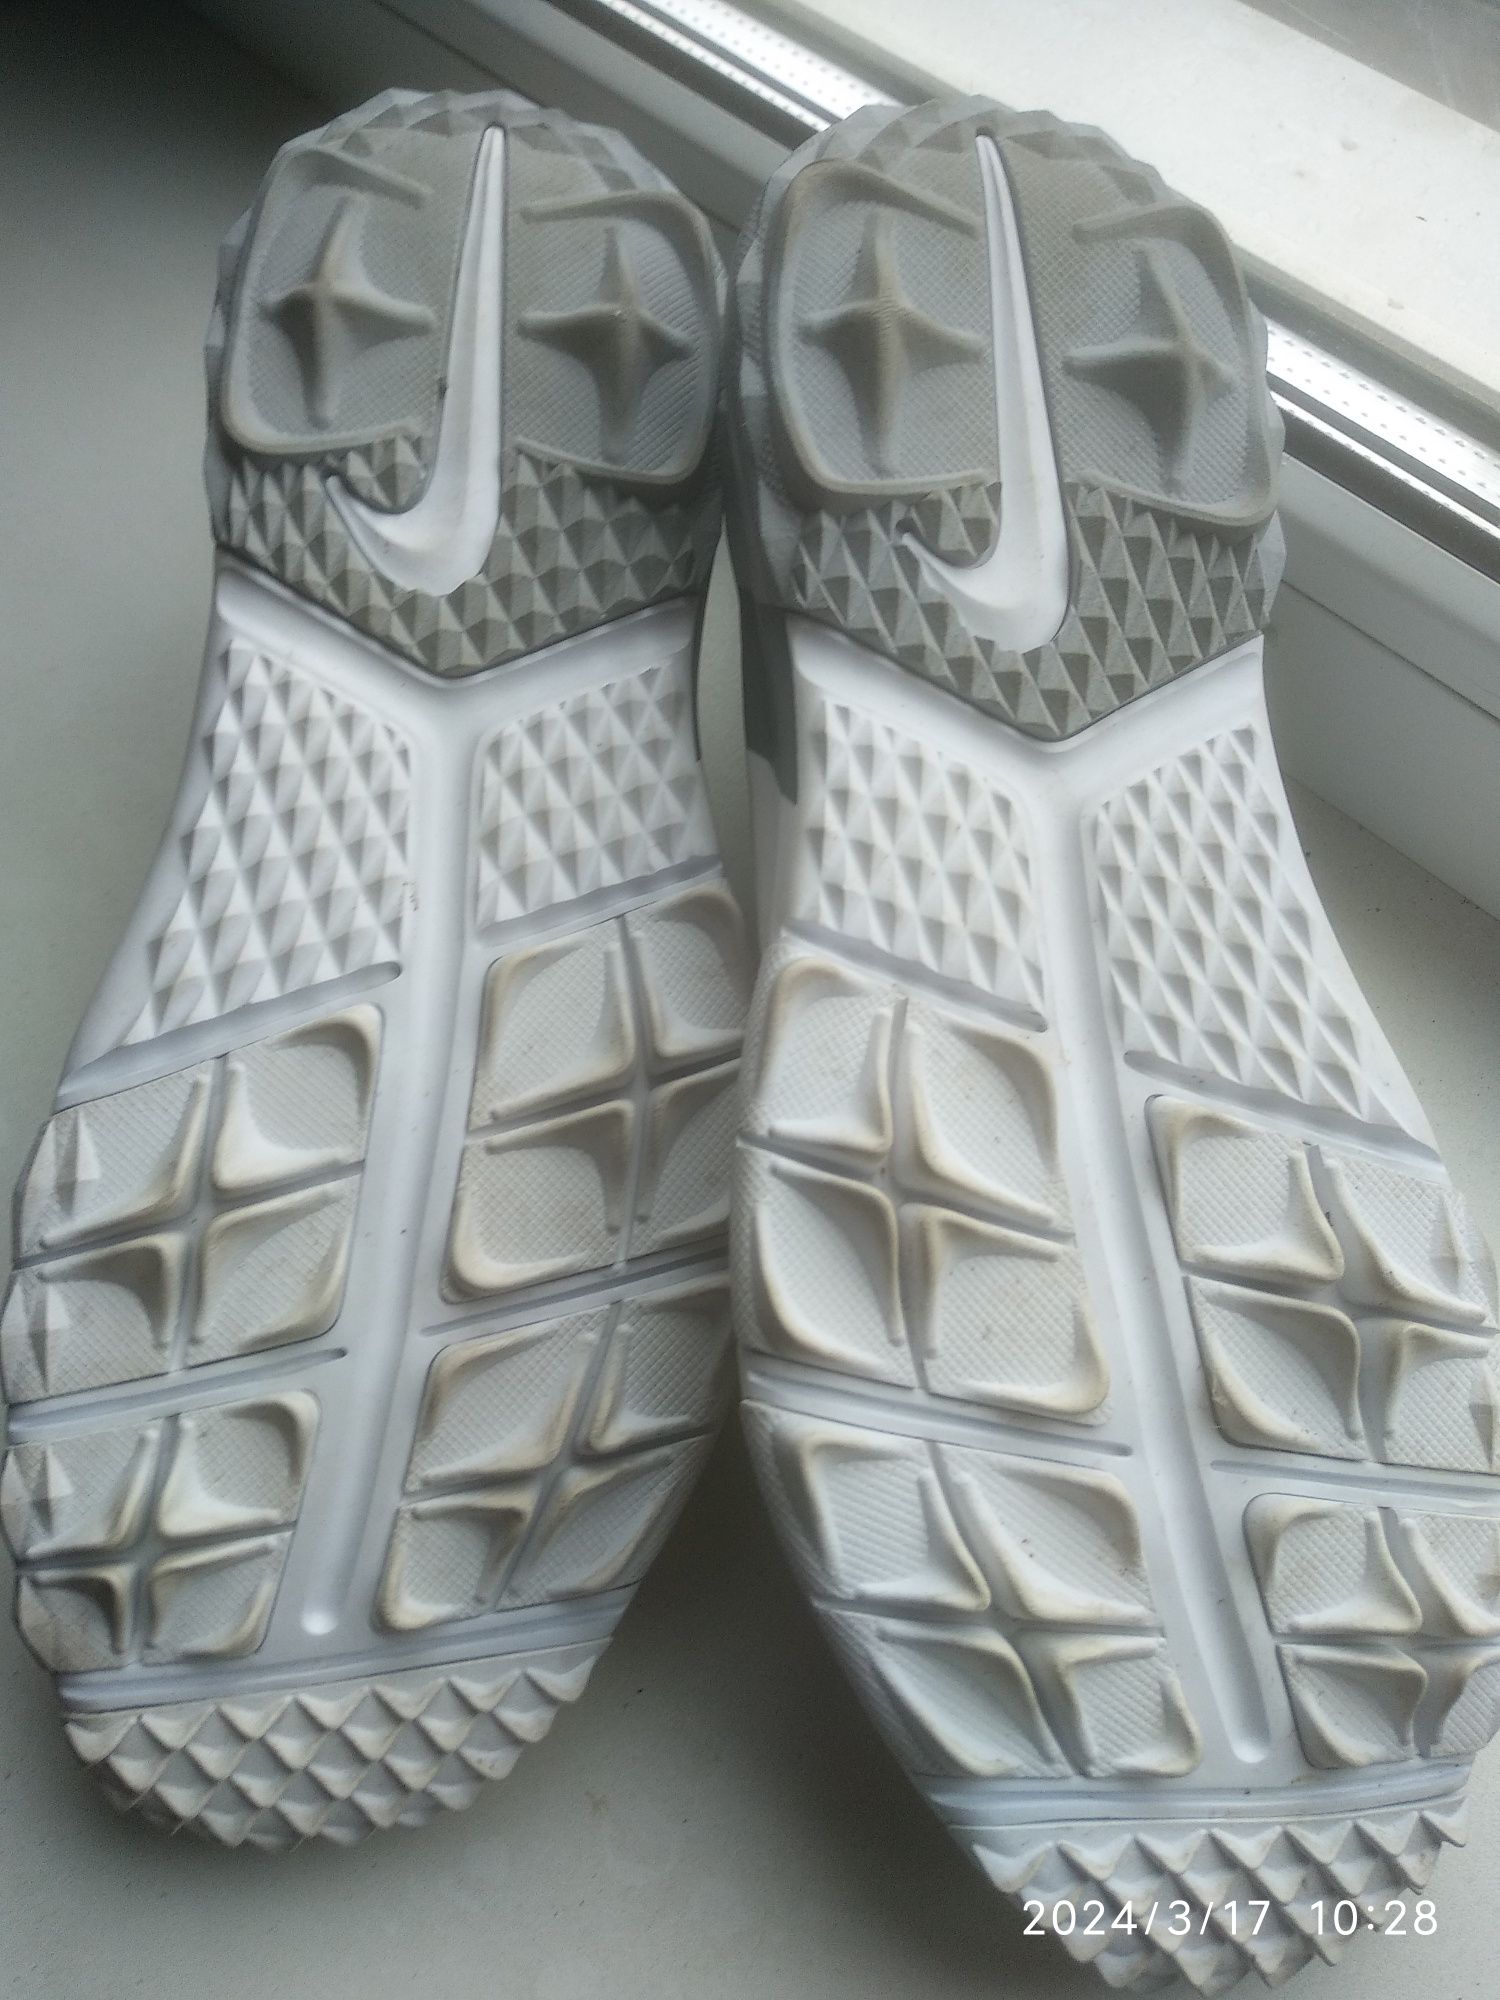 Кроссовки Nike бампы, сороконожки оригинал игровые 41 р.26 см